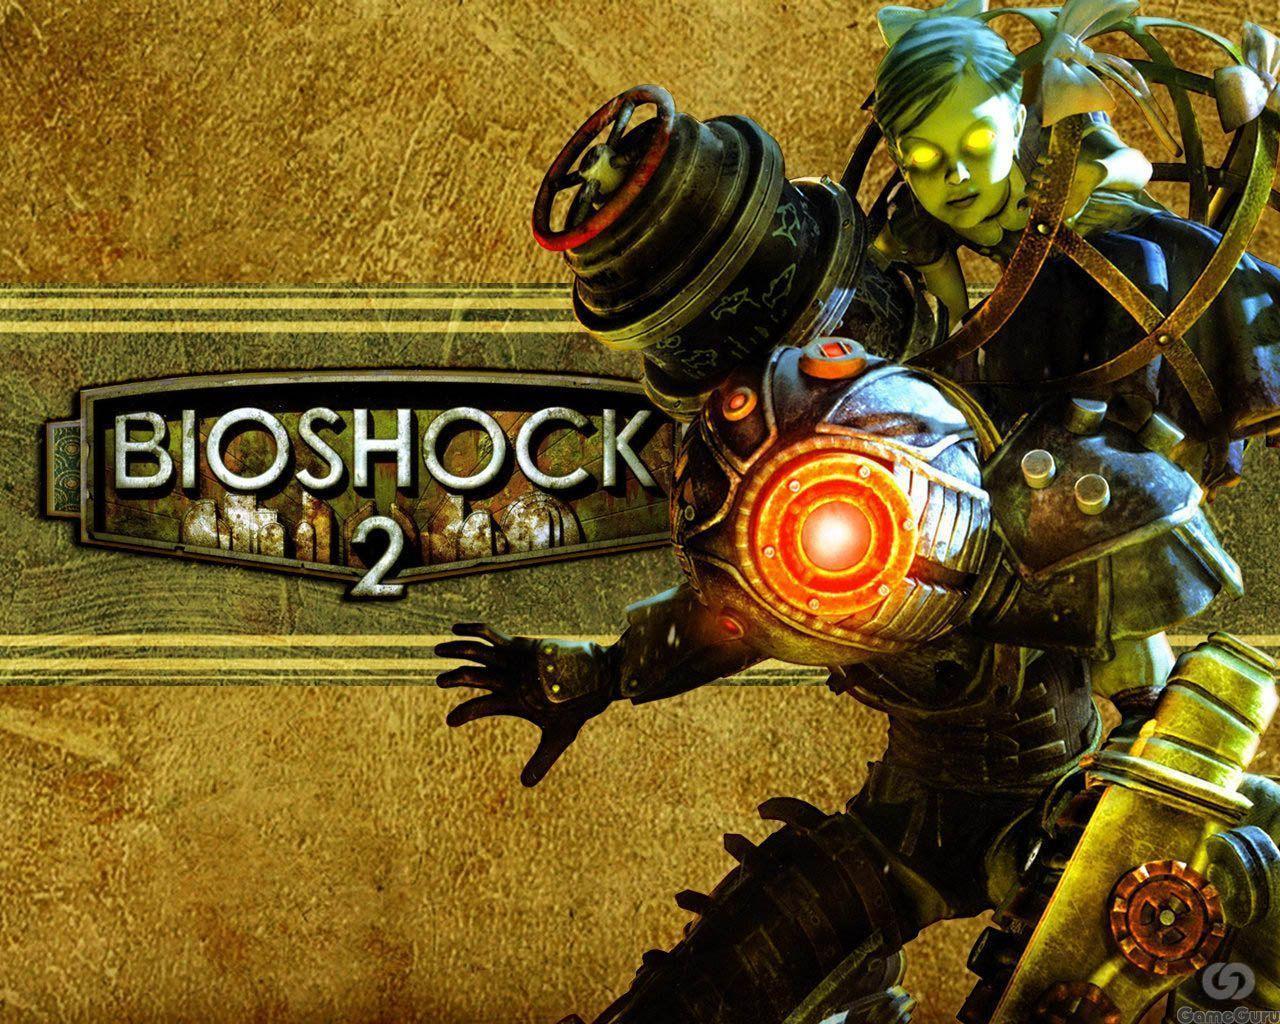 Bioshock 2 Rpg Games Wallpaper Image featuring Bioshock 2